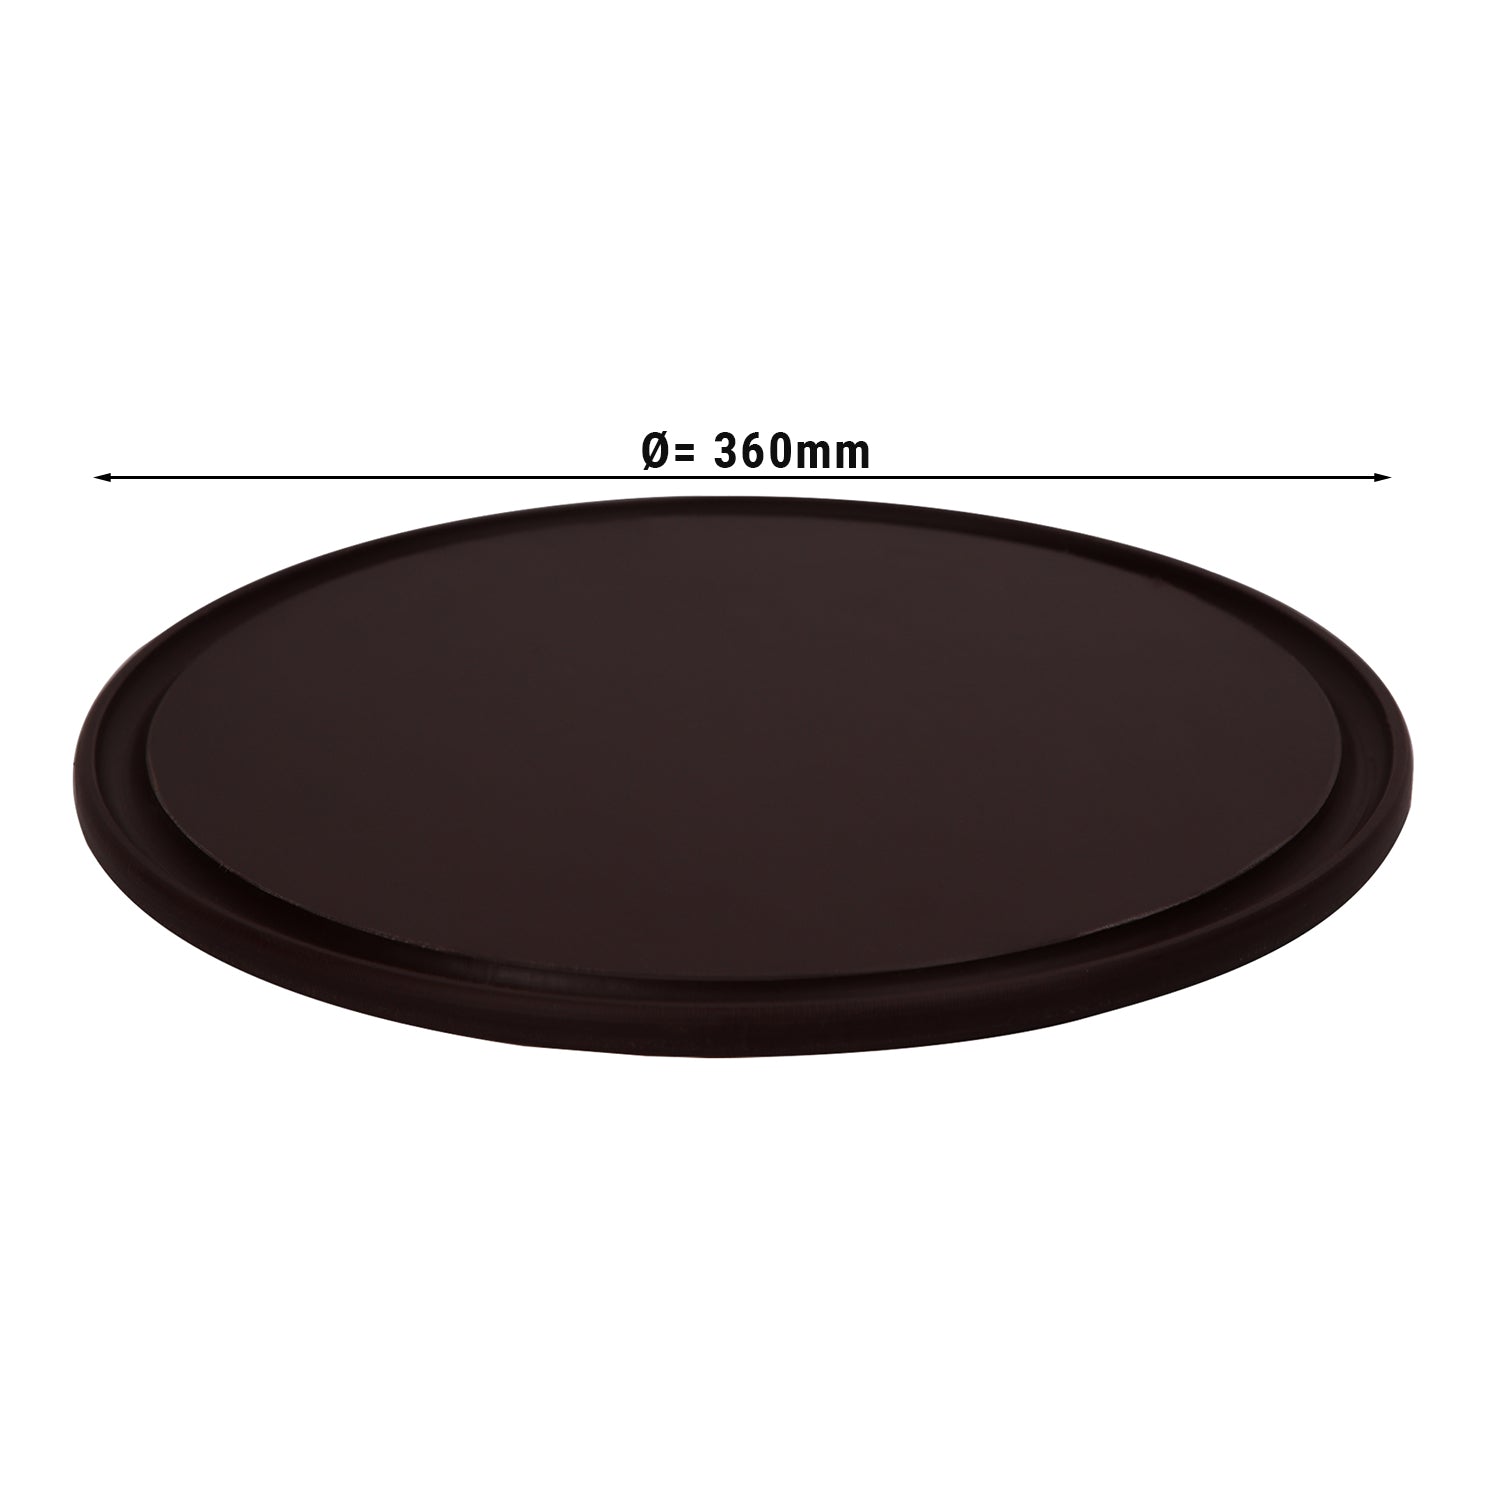 Pizzabakke - 36 cm i diameter